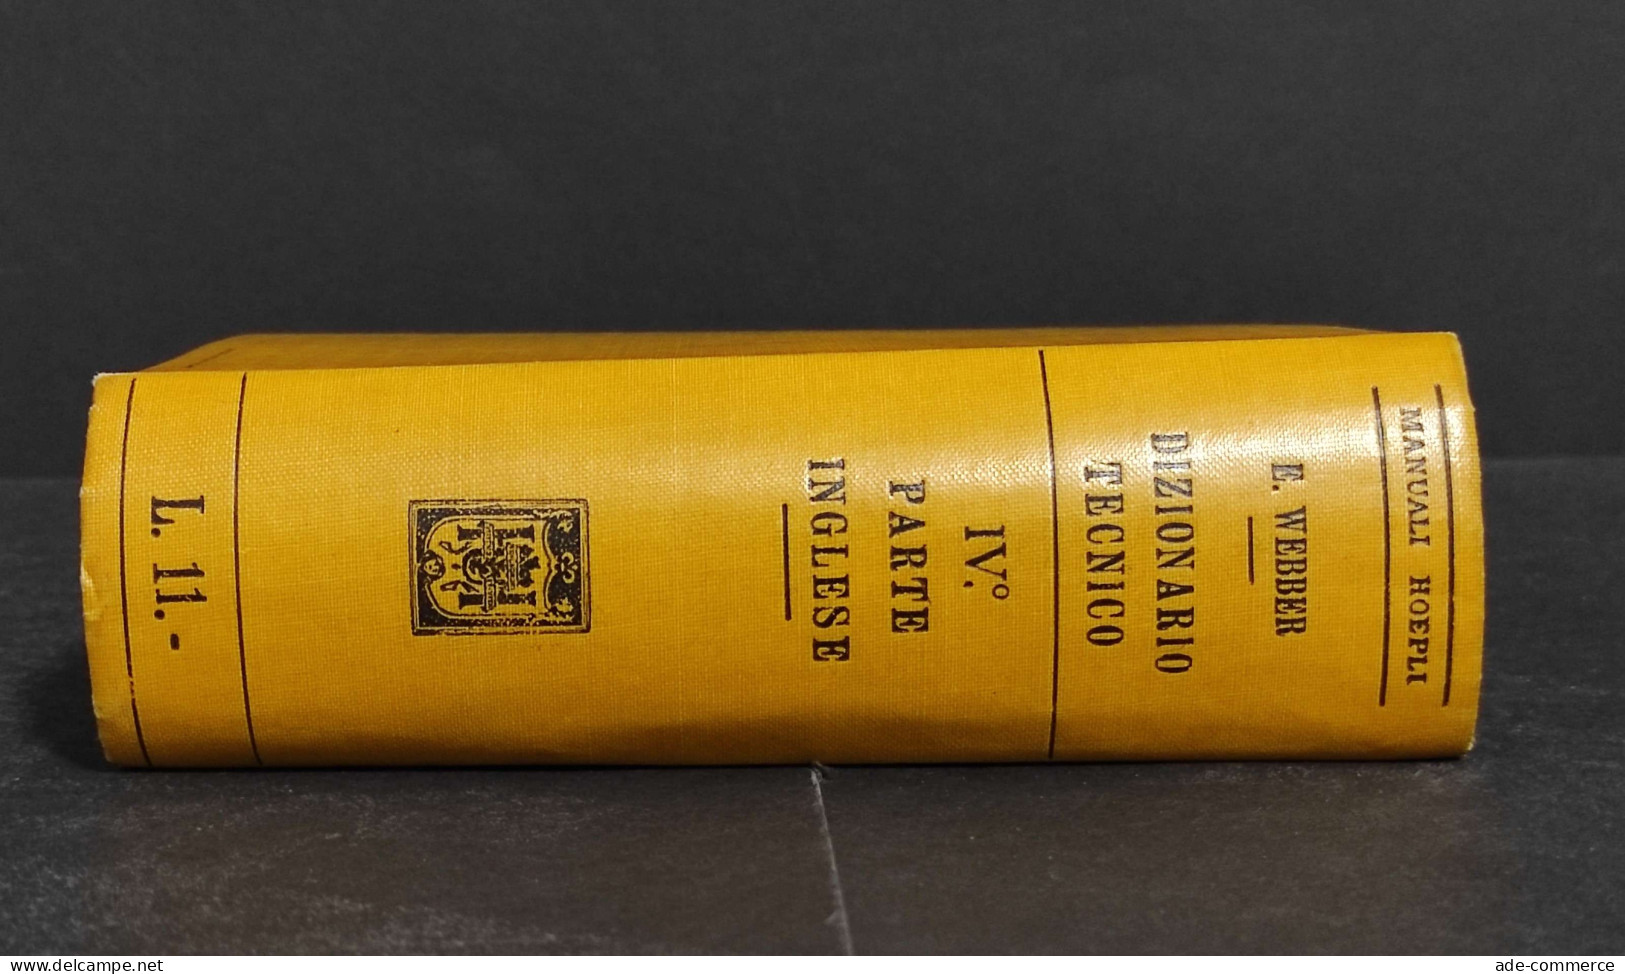 Dizionario Tecnico In Quattro Lingue IV - E. Webber - Ed. Hoepli - 1917 - Manuels Pour Collectionneurs